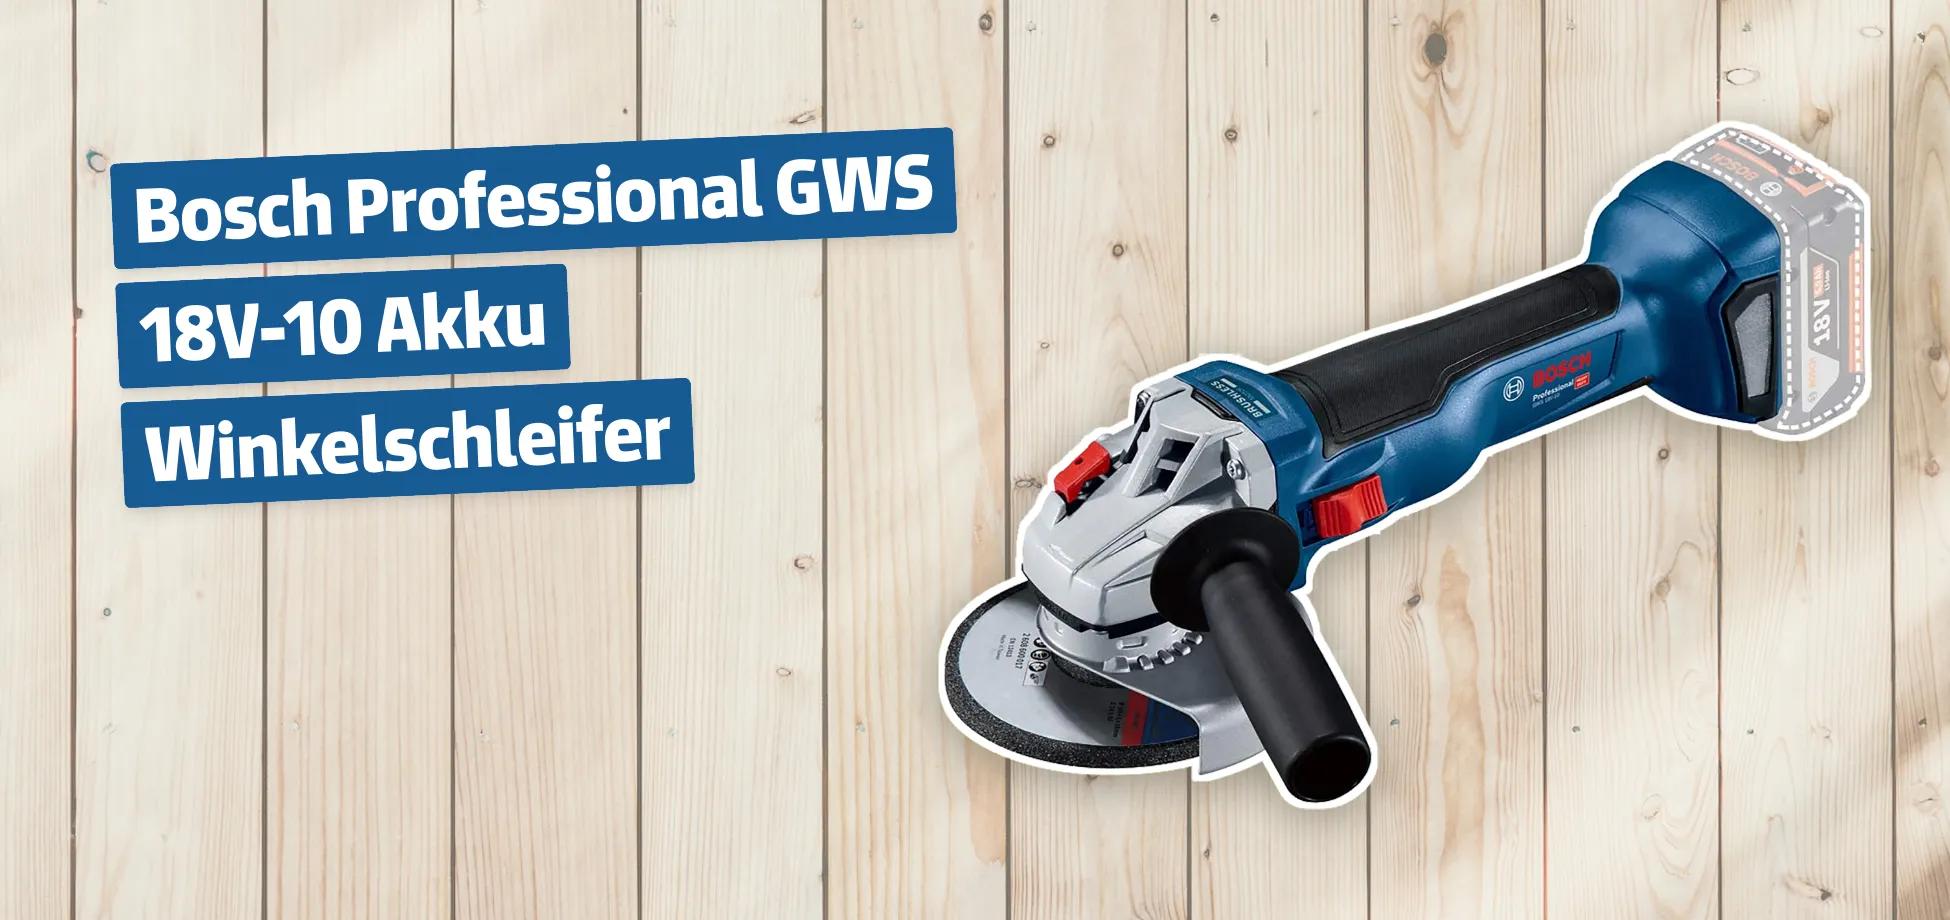 Bosch Professional GWS 18V-10 Akku Winkelschleifer